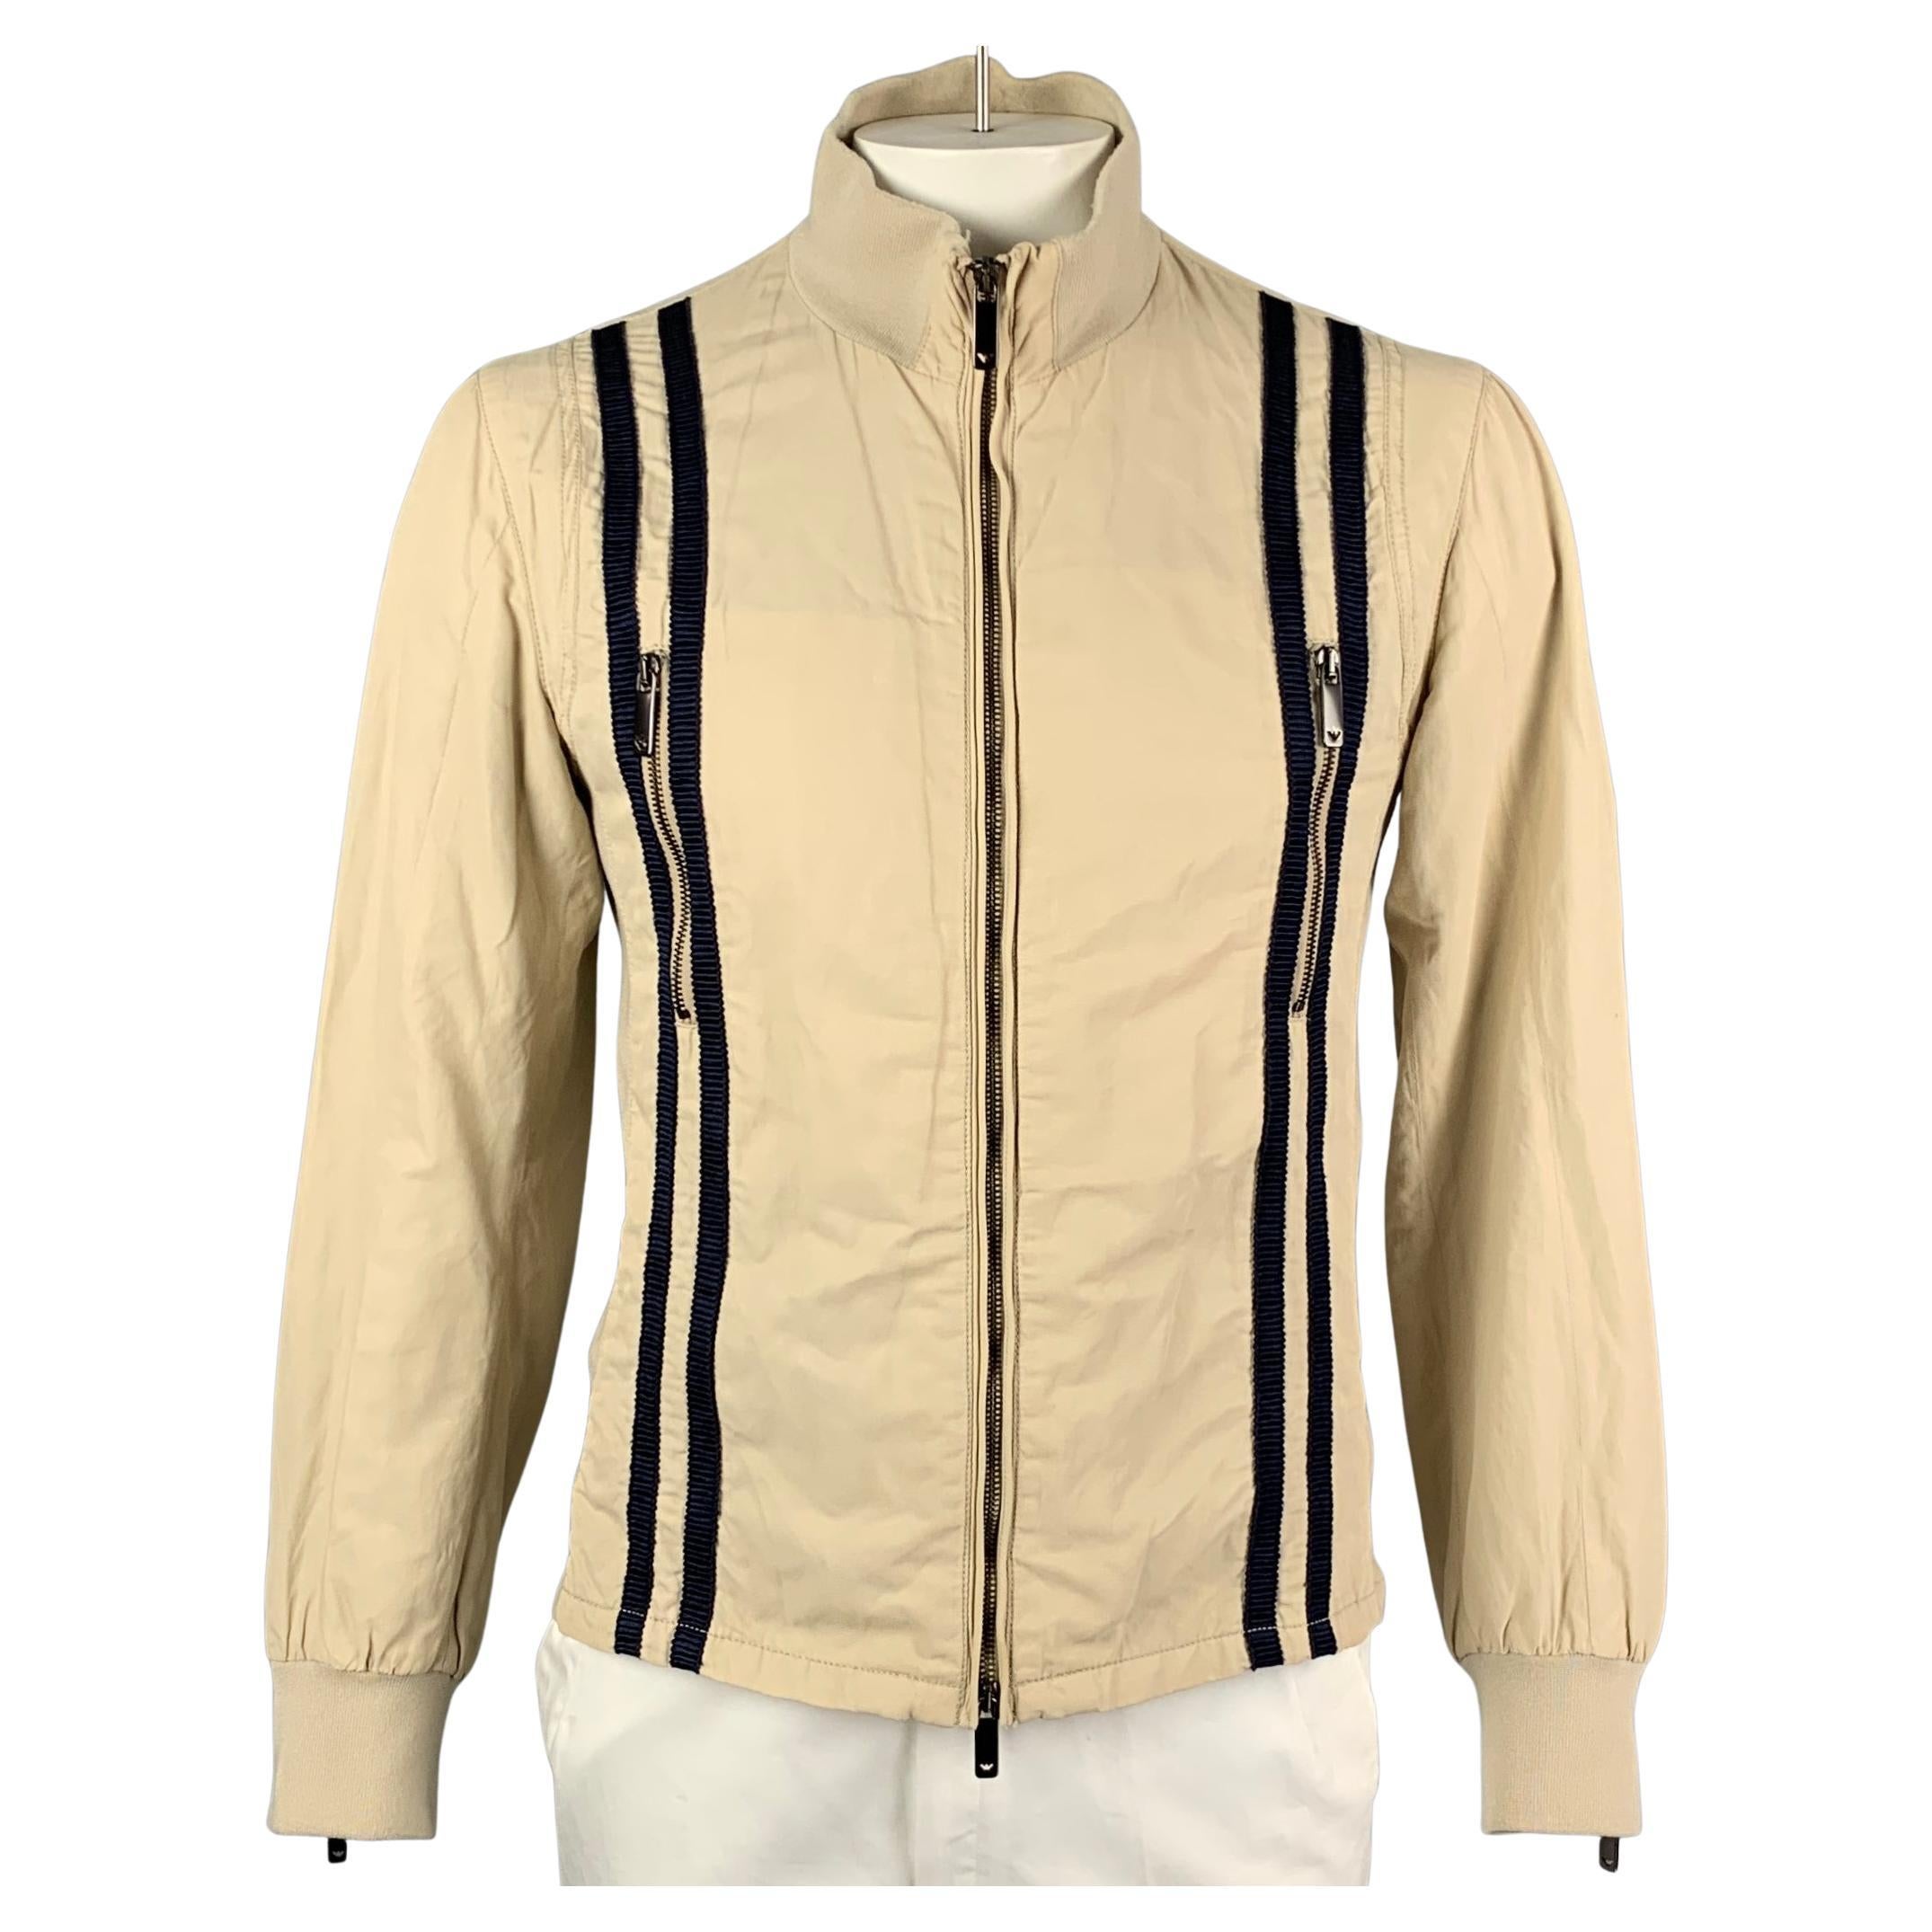 EMPORIO ARMANI Size 42 Khaki & Navy Cotton Blend Zip Up Jacket